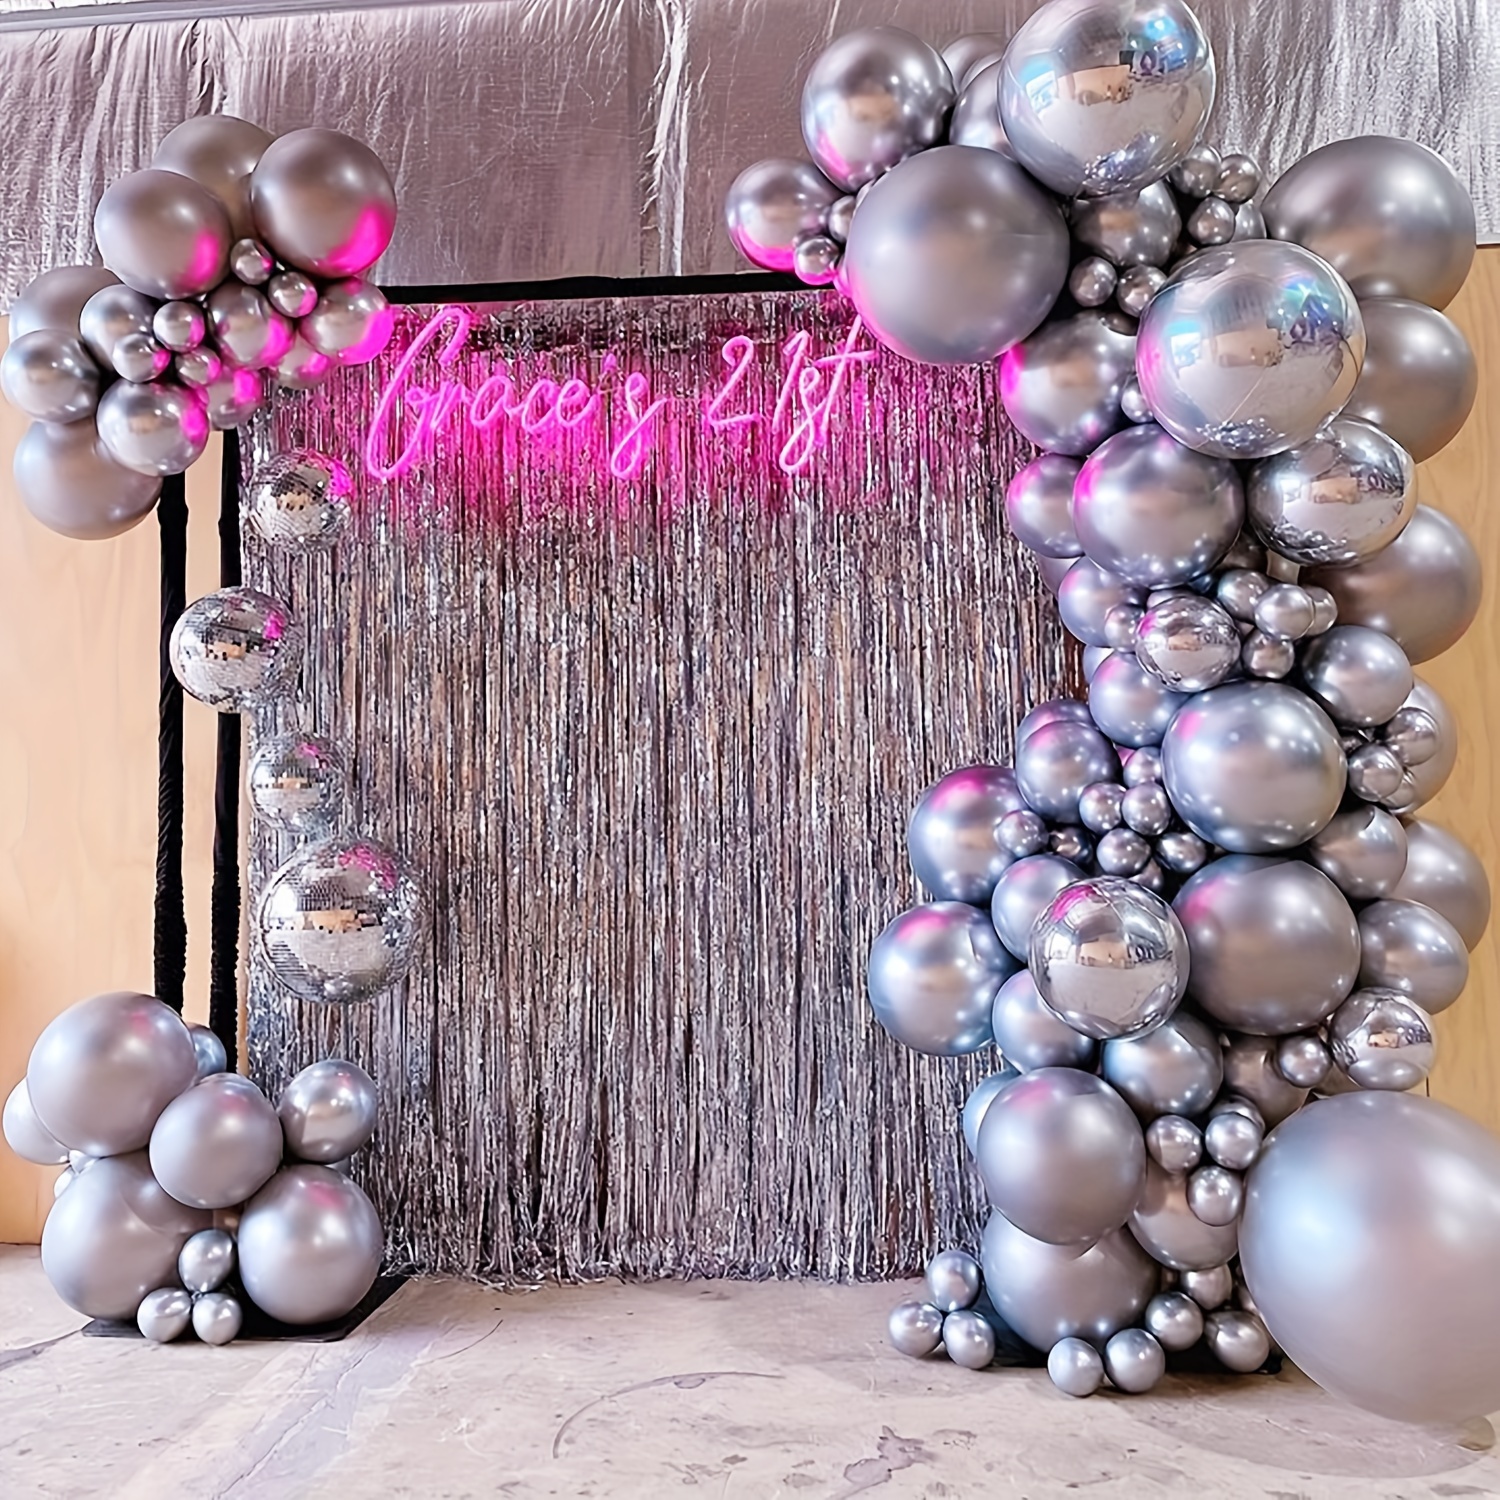  Juego de 73 globos plateados cromados, guirnalda de globos  plateados de 5/10/12/18 pulgadas, globos plateados metálicos de diferentes  tamaños como baby shower, cumpleaños, aniversario, boda, Navidad,  decoraciones de fiesta : Juguetes